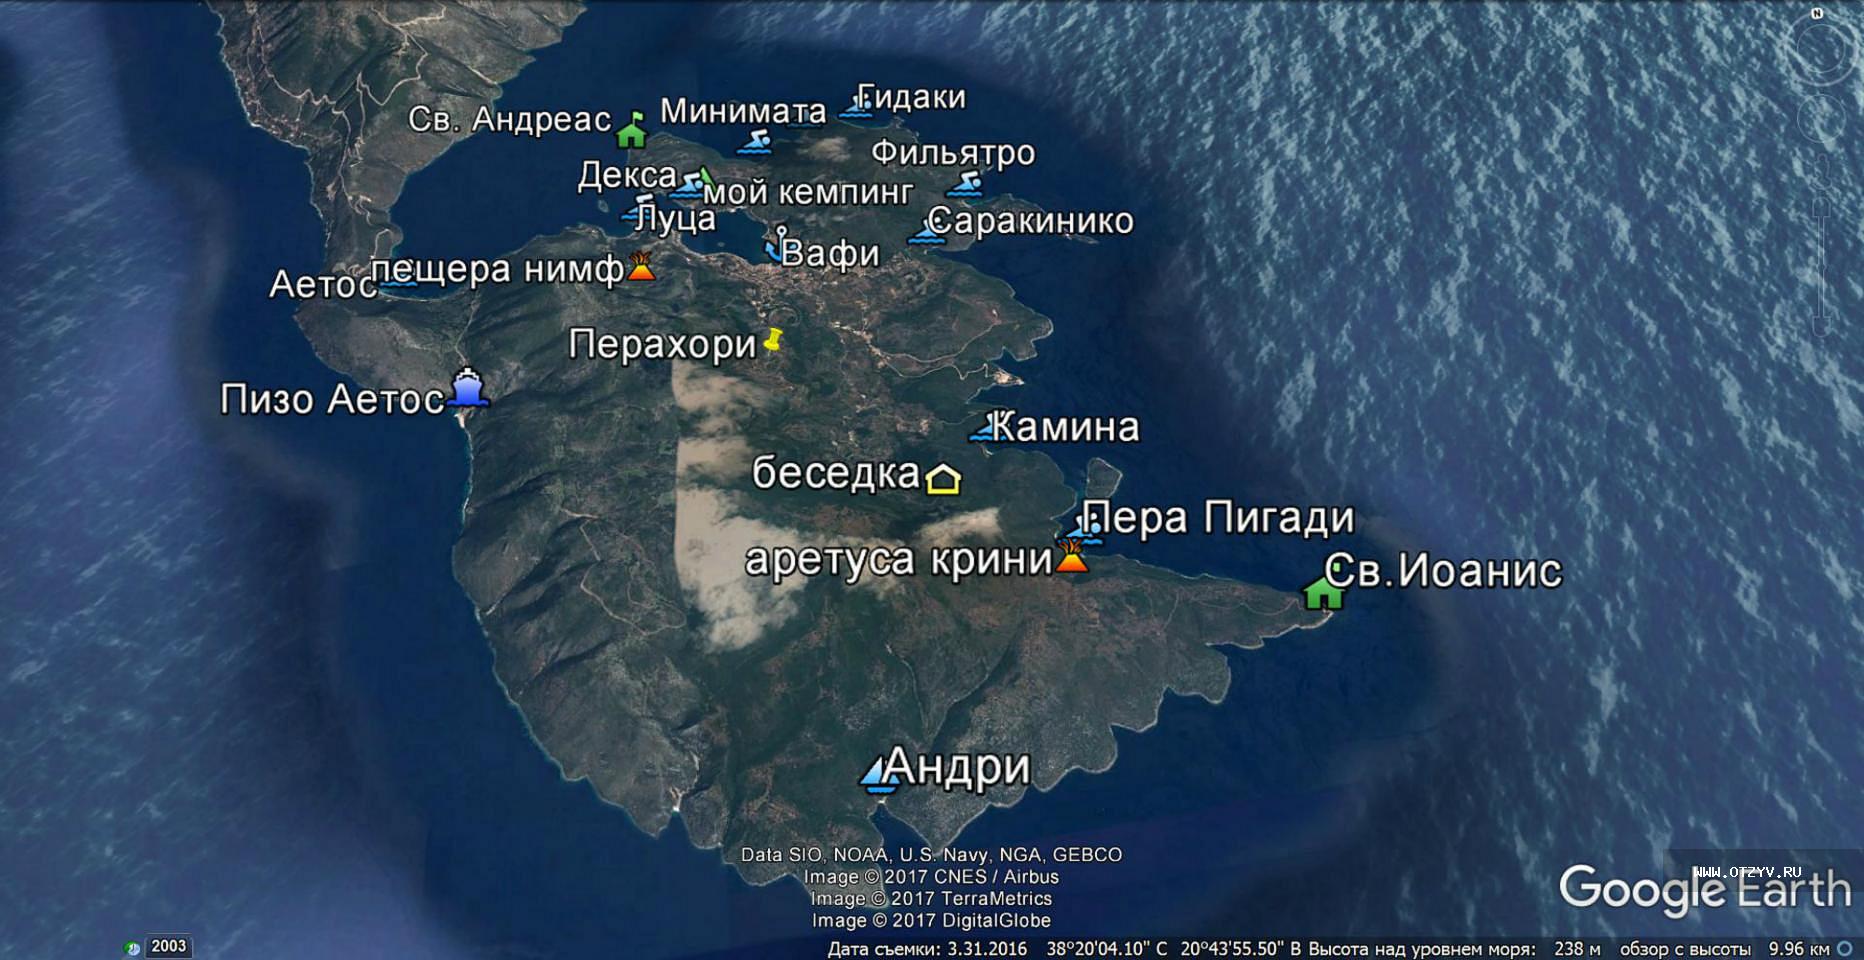 Остров Итака на карте древней Греции